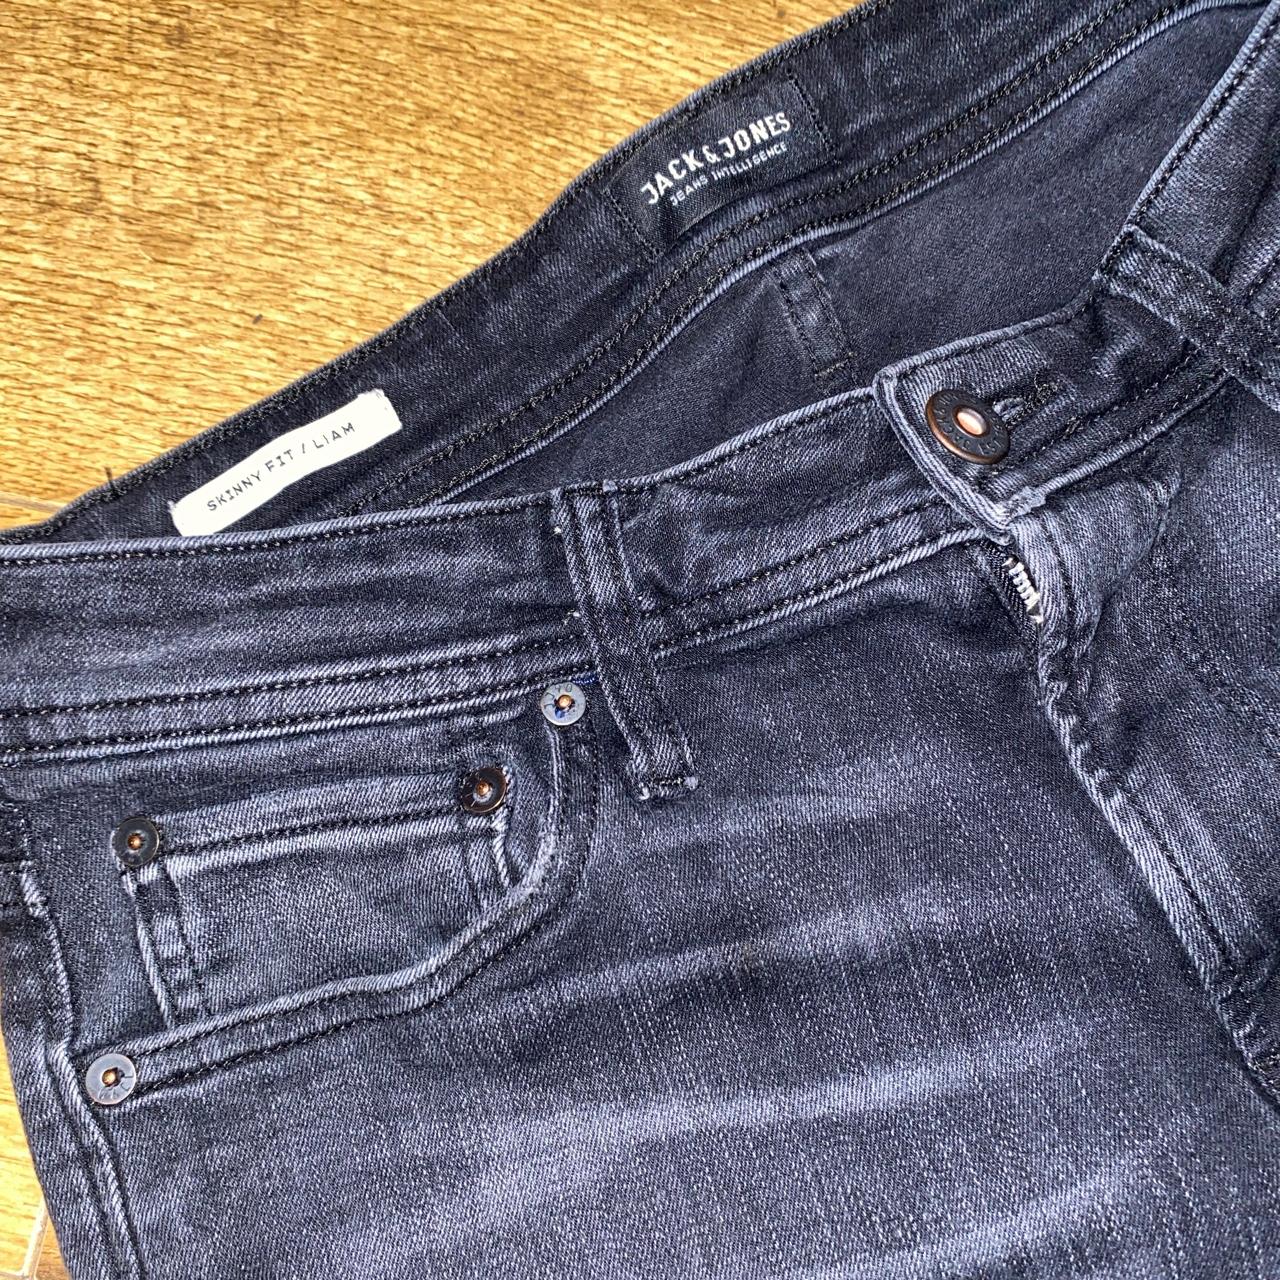 🔥 Jack&Jones Black wash Skinny Jeans with Abrasions... - Depop